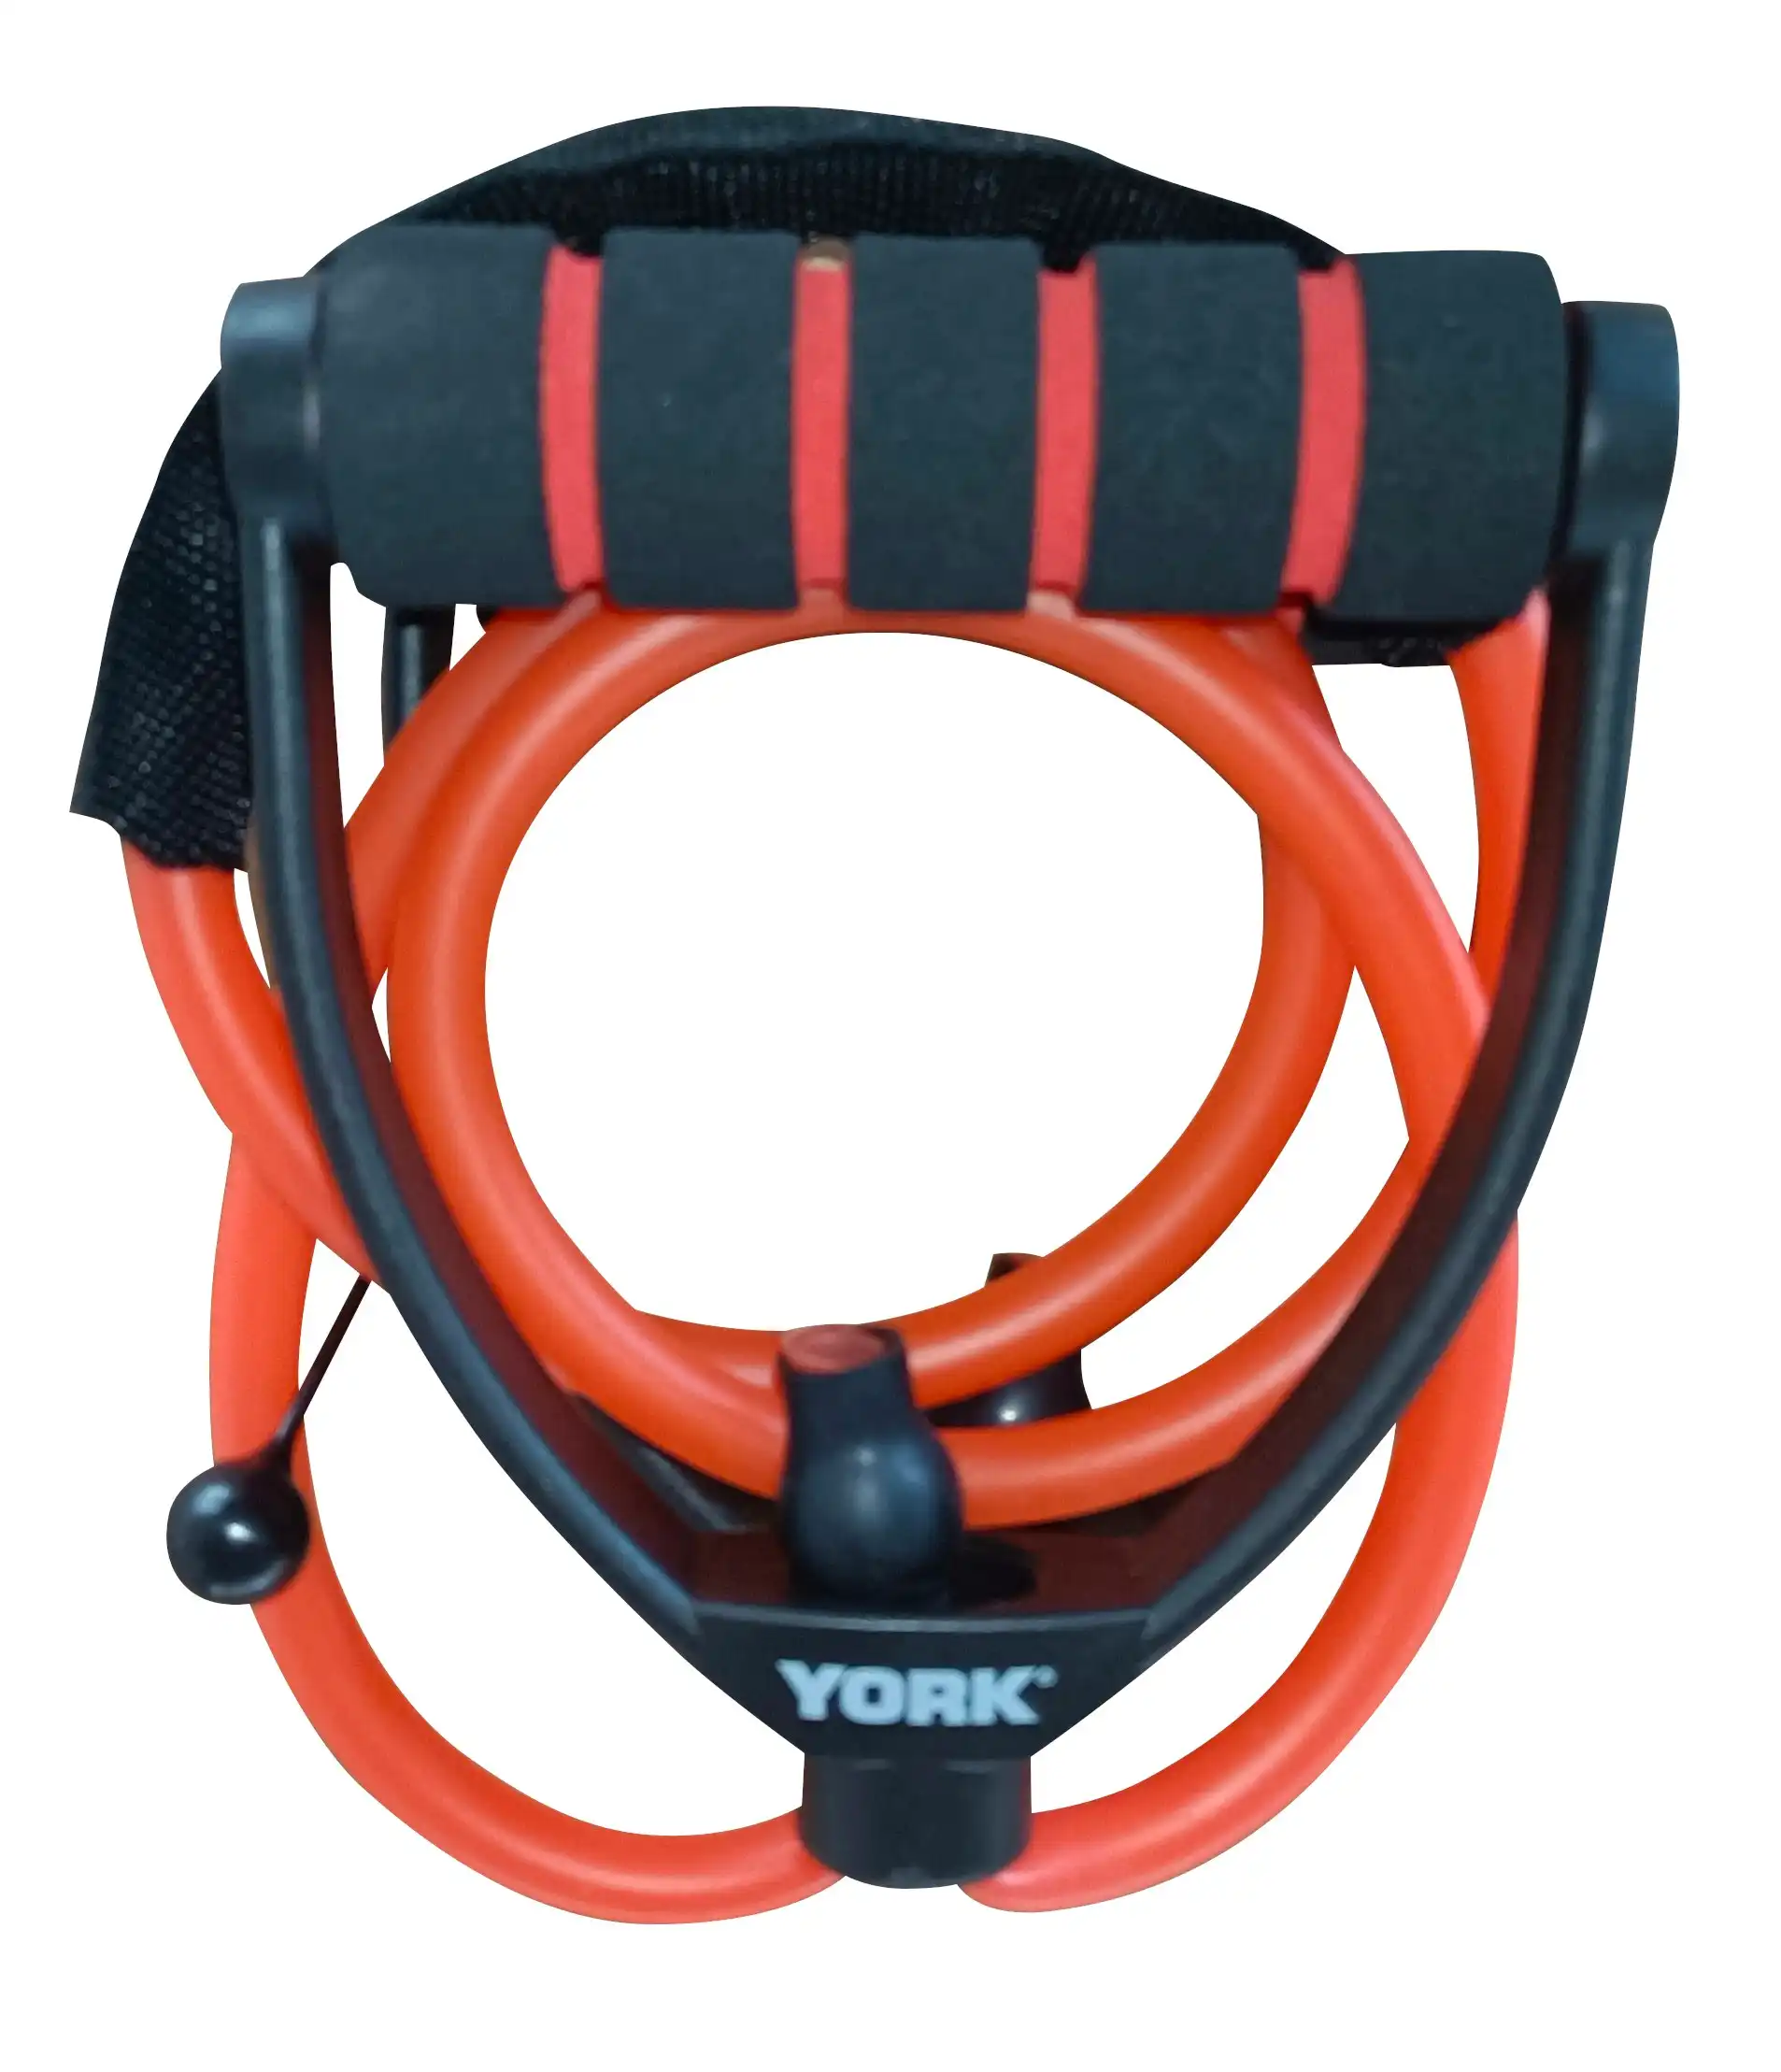 York Fitness Adjustable Resistance Tube (Medium)